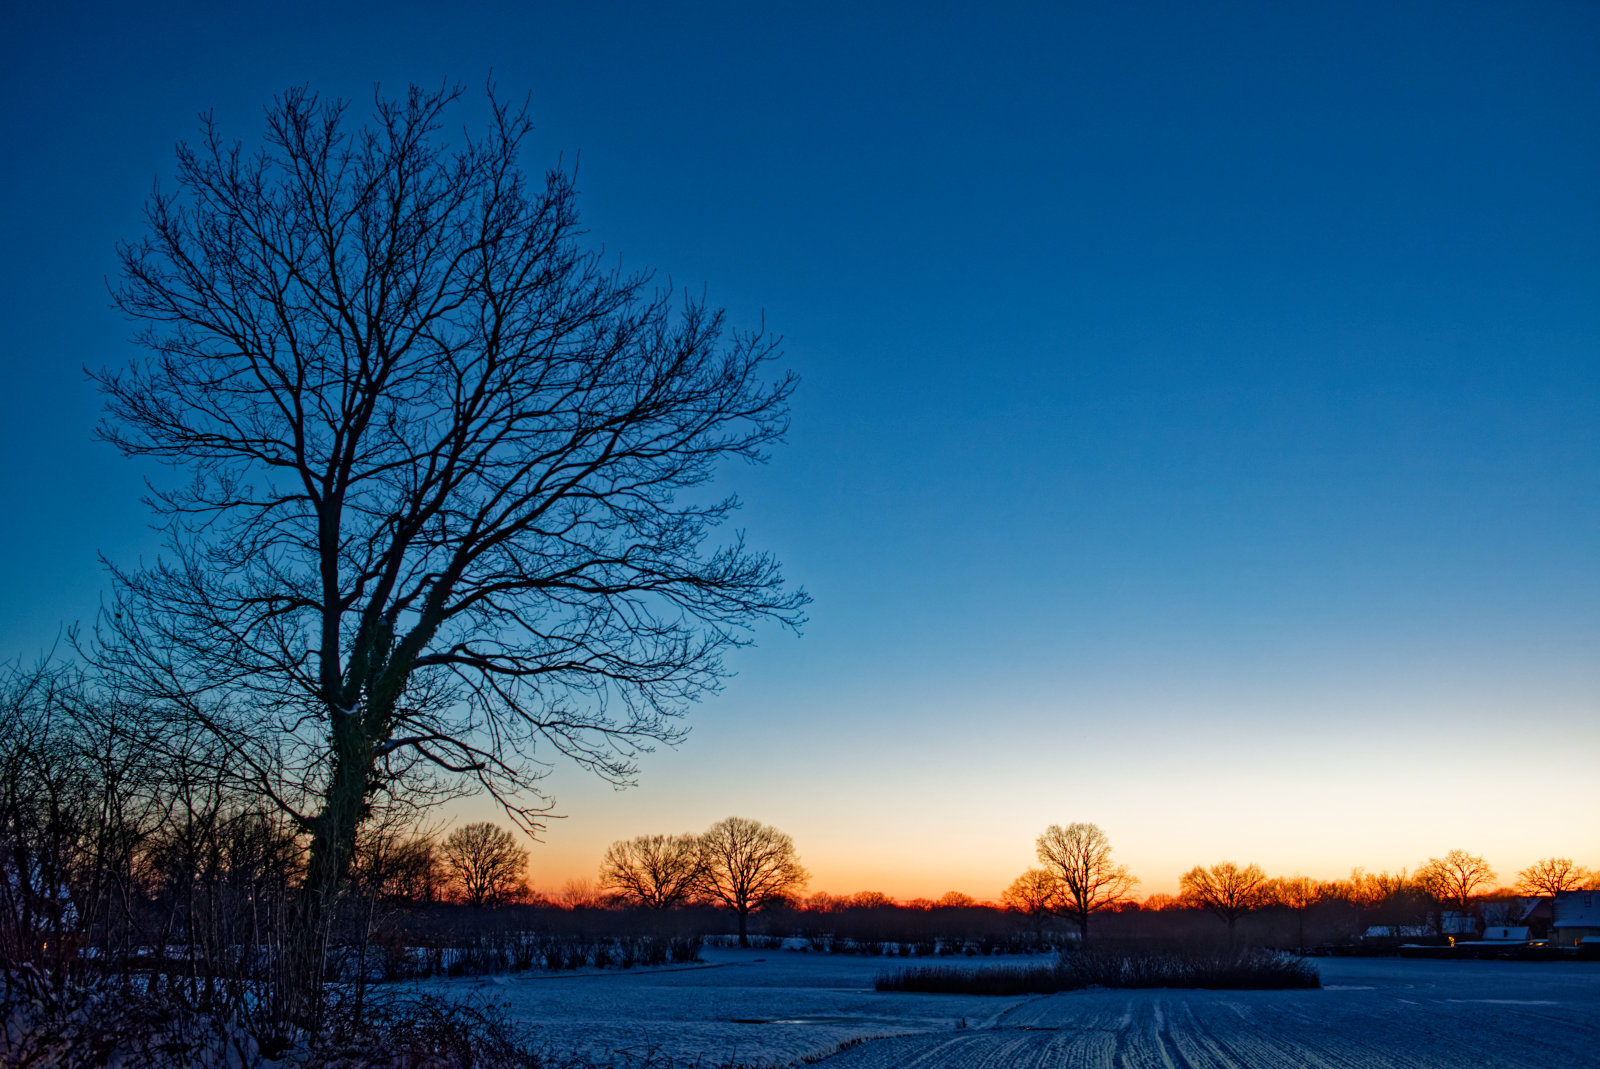 Silhouette eines kahlen Baums mit großer runder Krone vor klarem, blauem Himmel. Am unteren Bildrand mehr Bäume gegen den rötlichen Schimmer des SonnenUntergangs